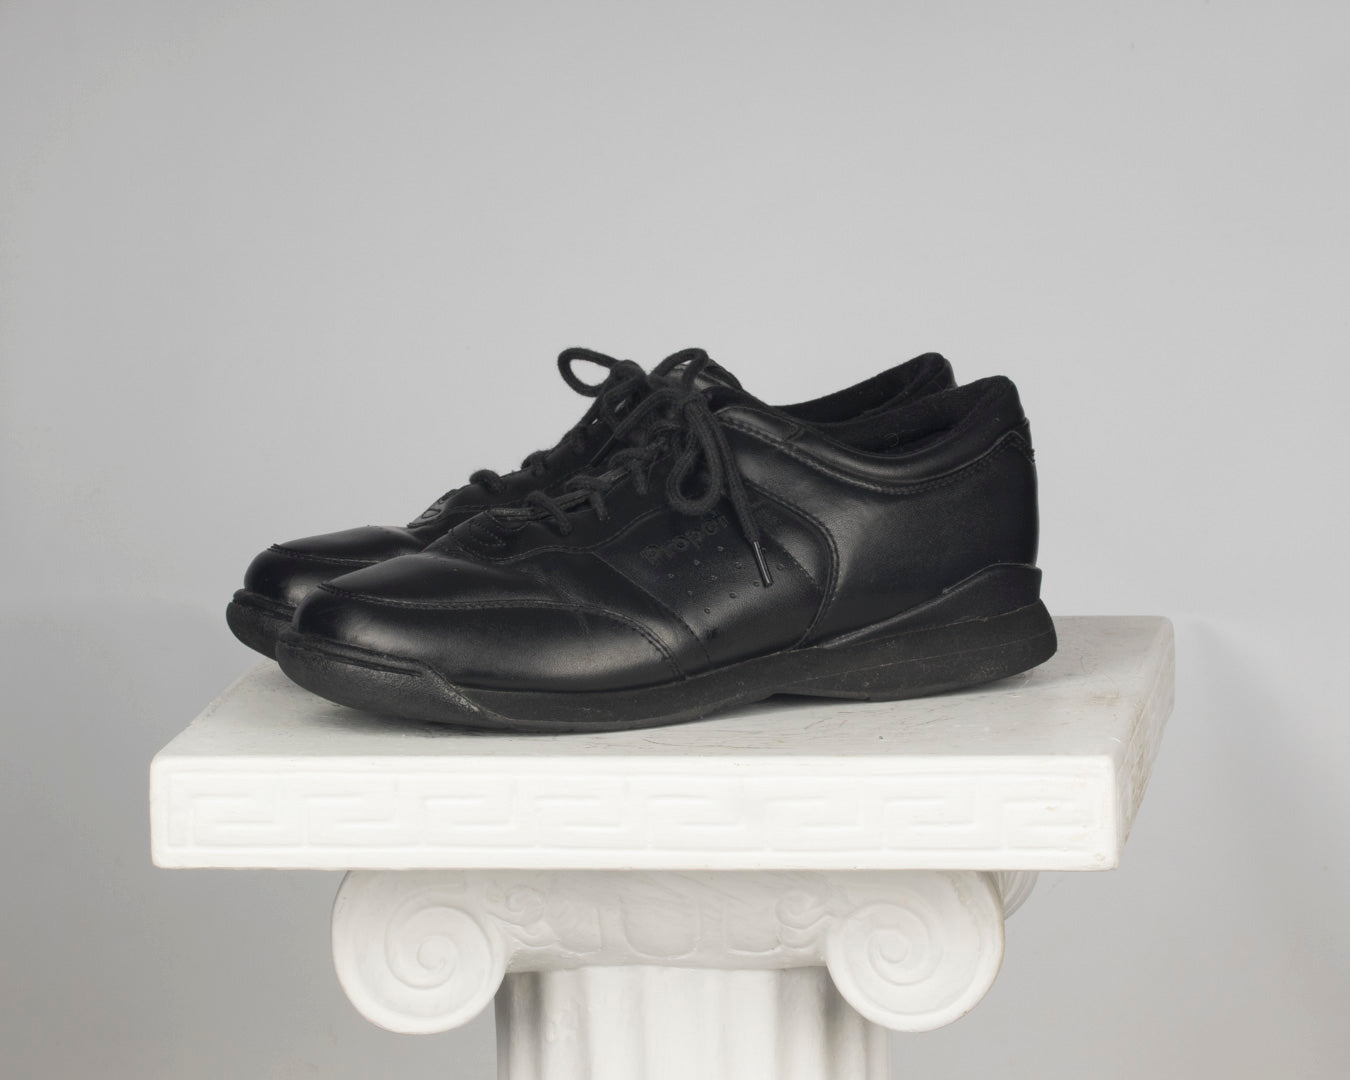 Black Dad sneakers - Propet - women's 9